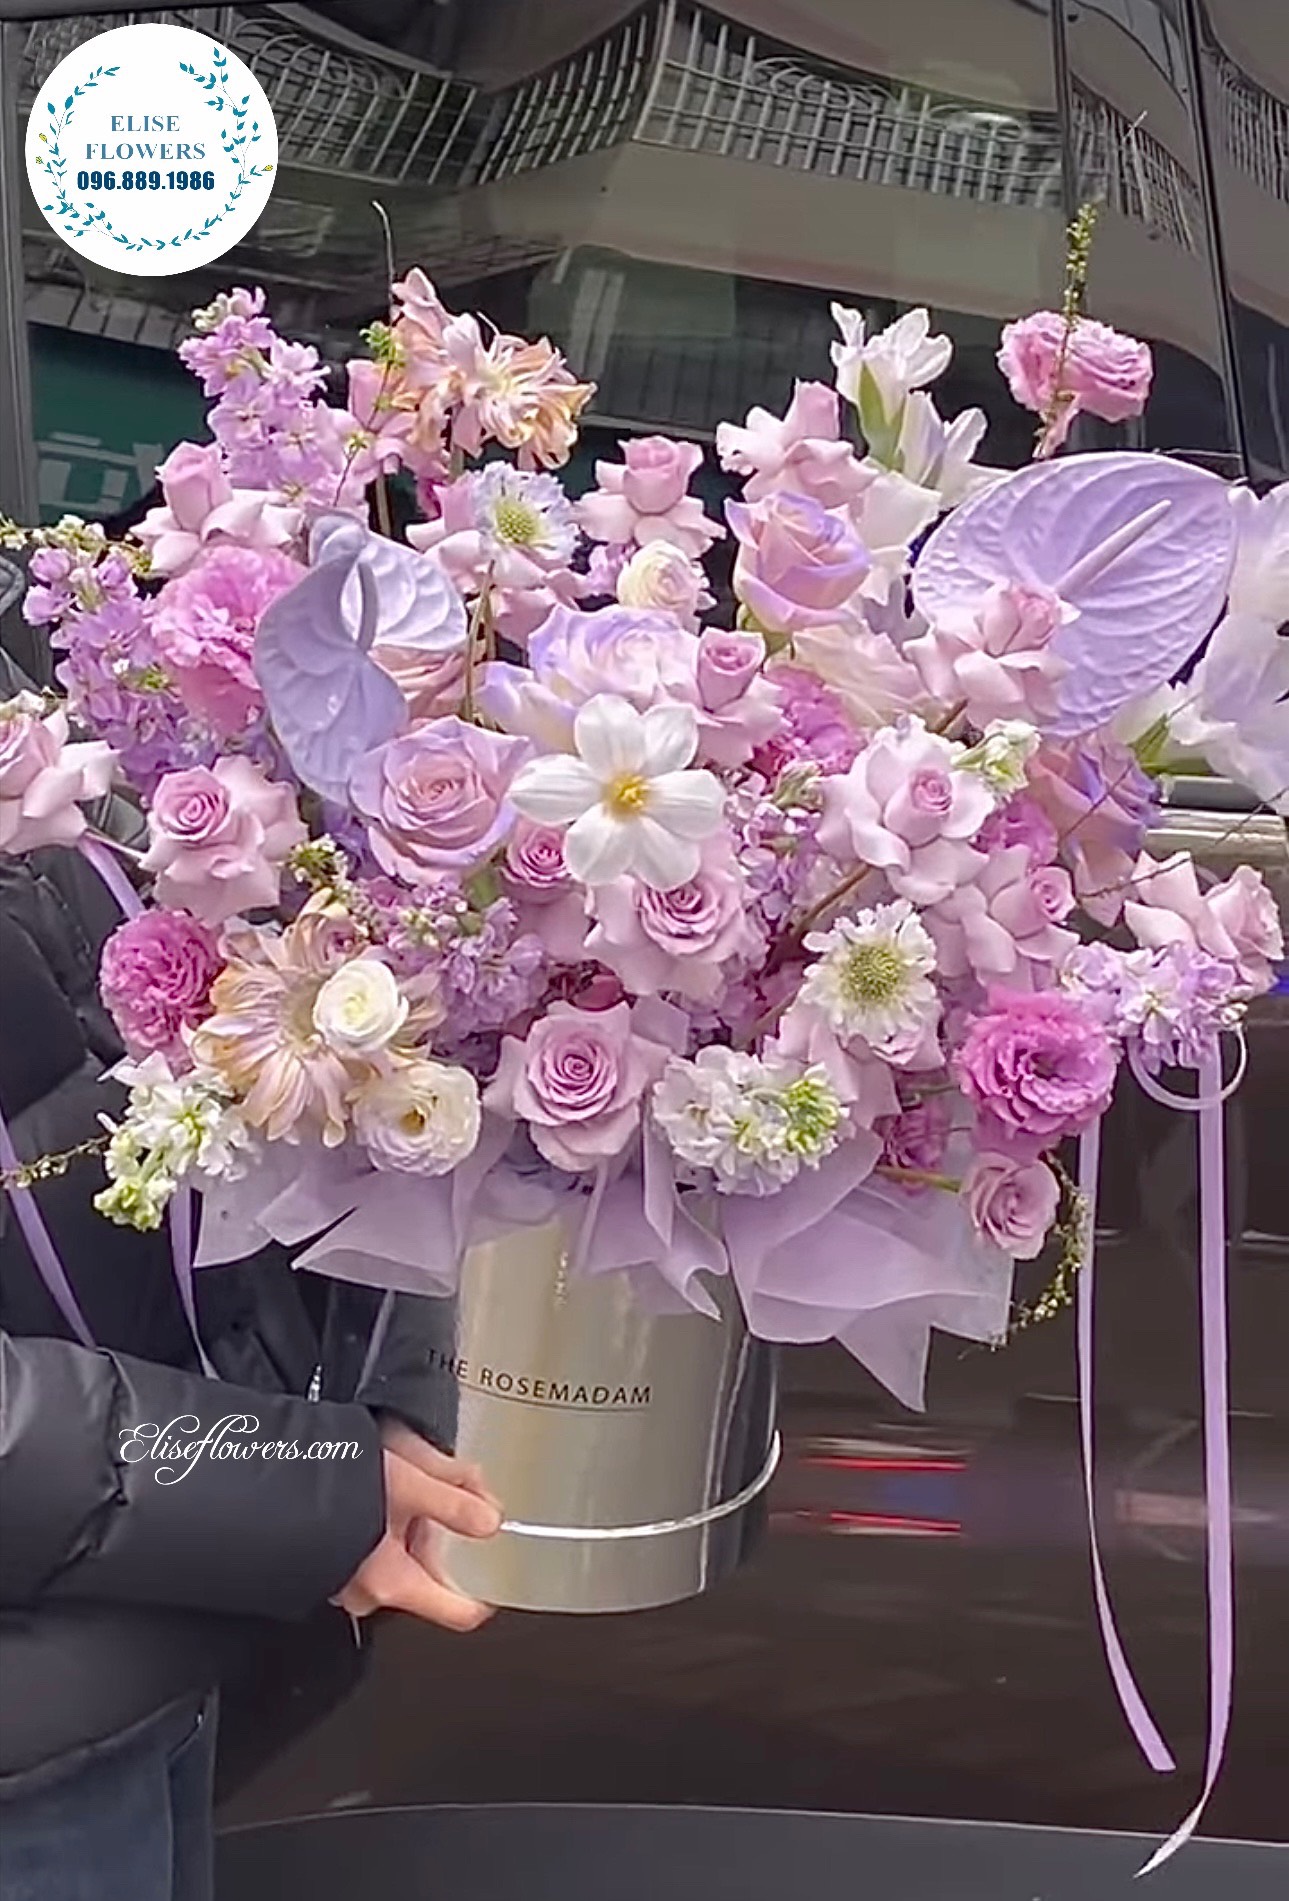 Hoa kỷ niệm ngày cưới đẹp ở Hà Nội. Lẵng hoa màu tím đẹp tặng vợ dịp kỷ niệm ngày cưới.